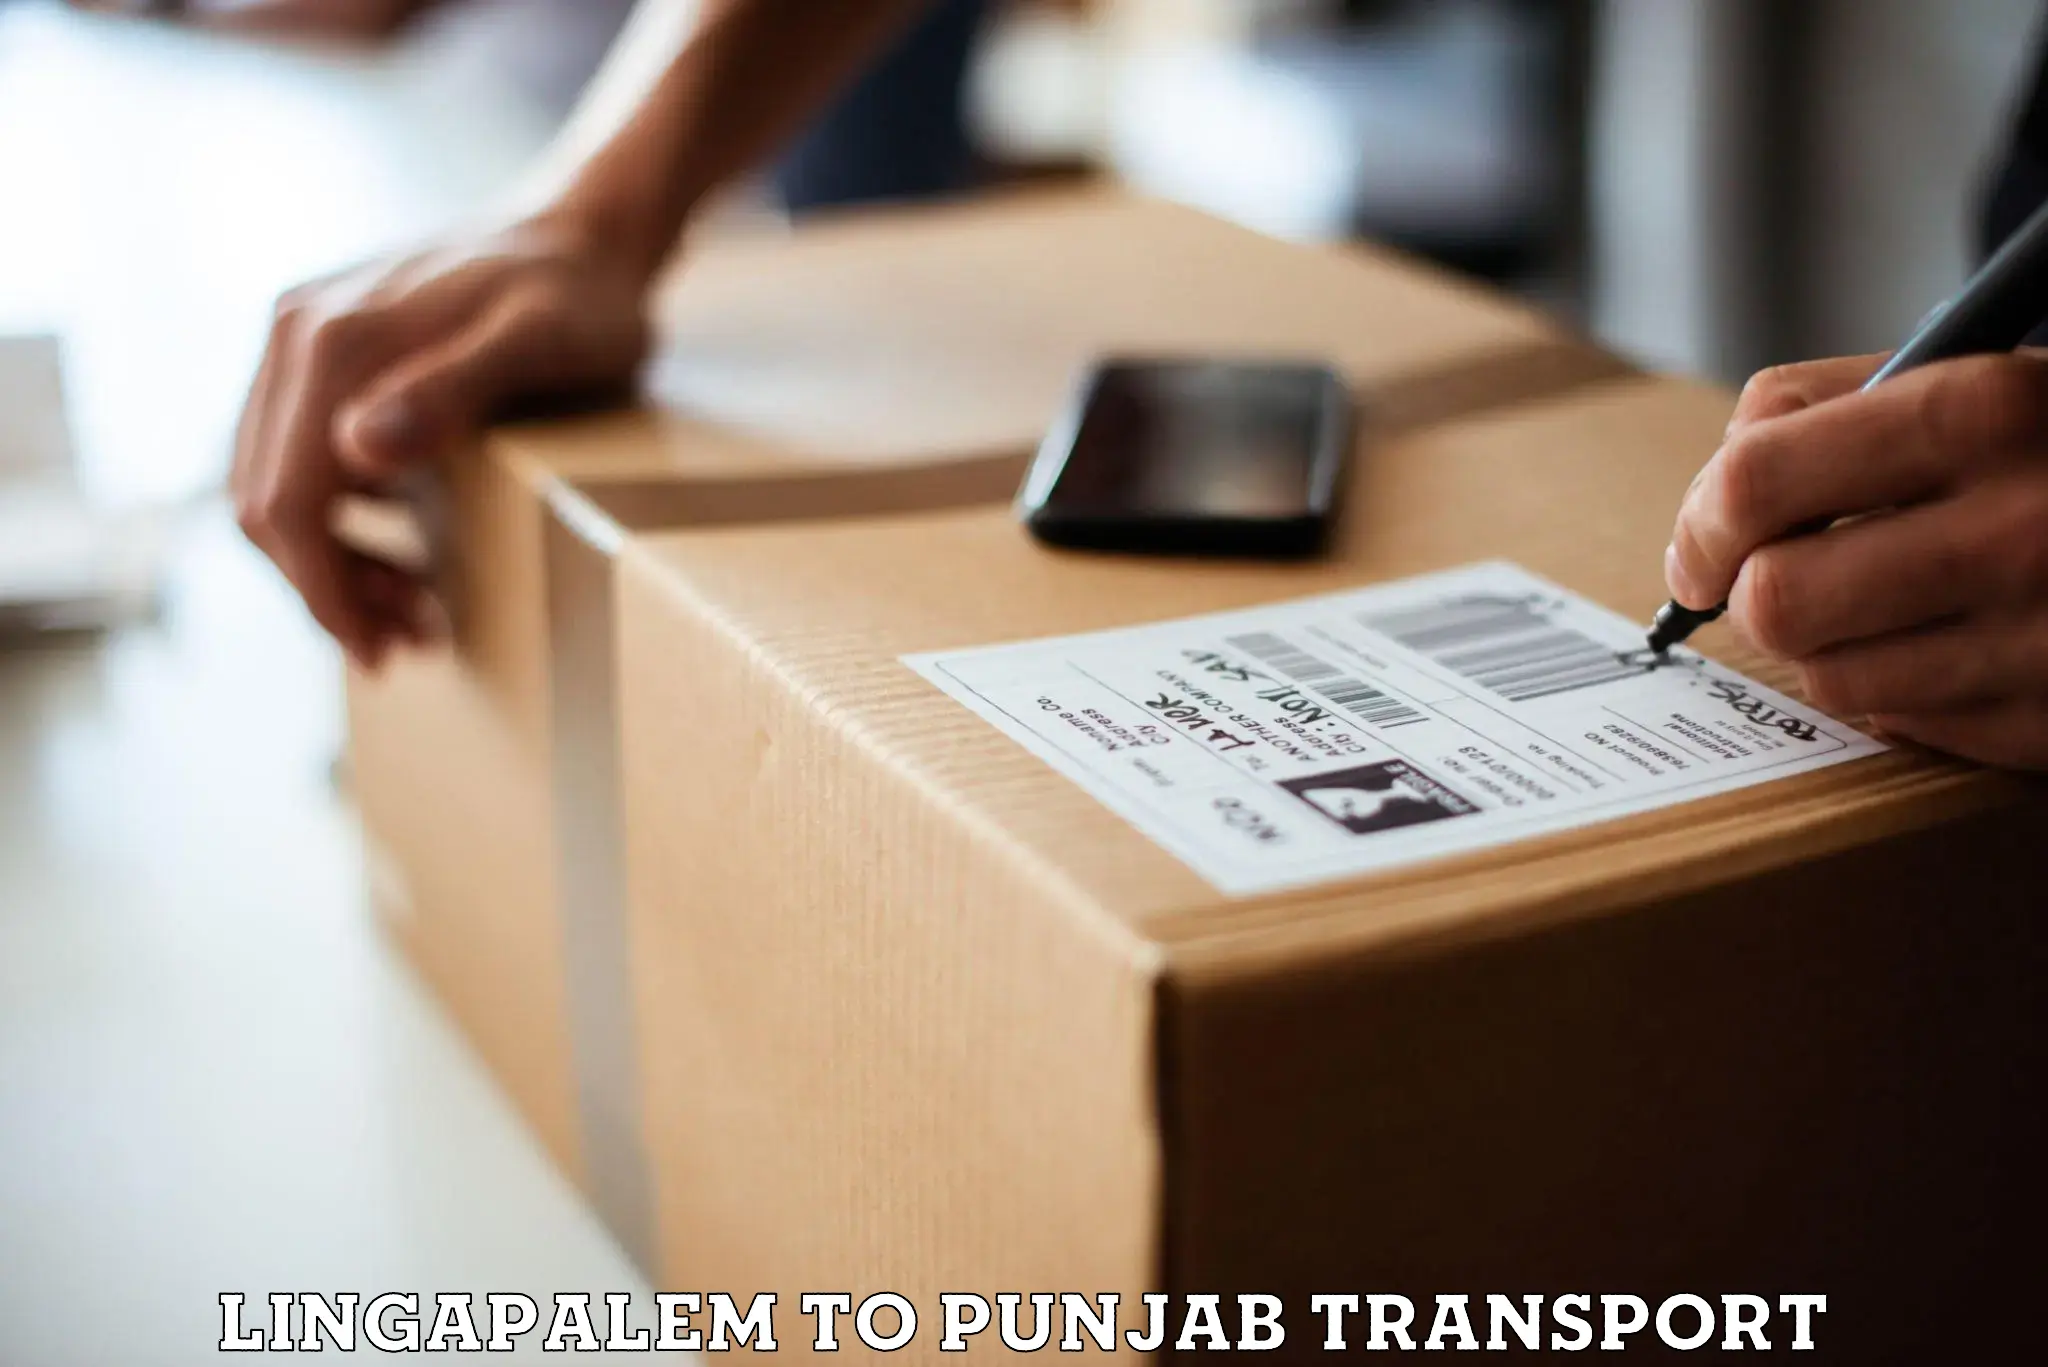 Daily parcel service transport Lingapalem to Mandi Gobindgarh